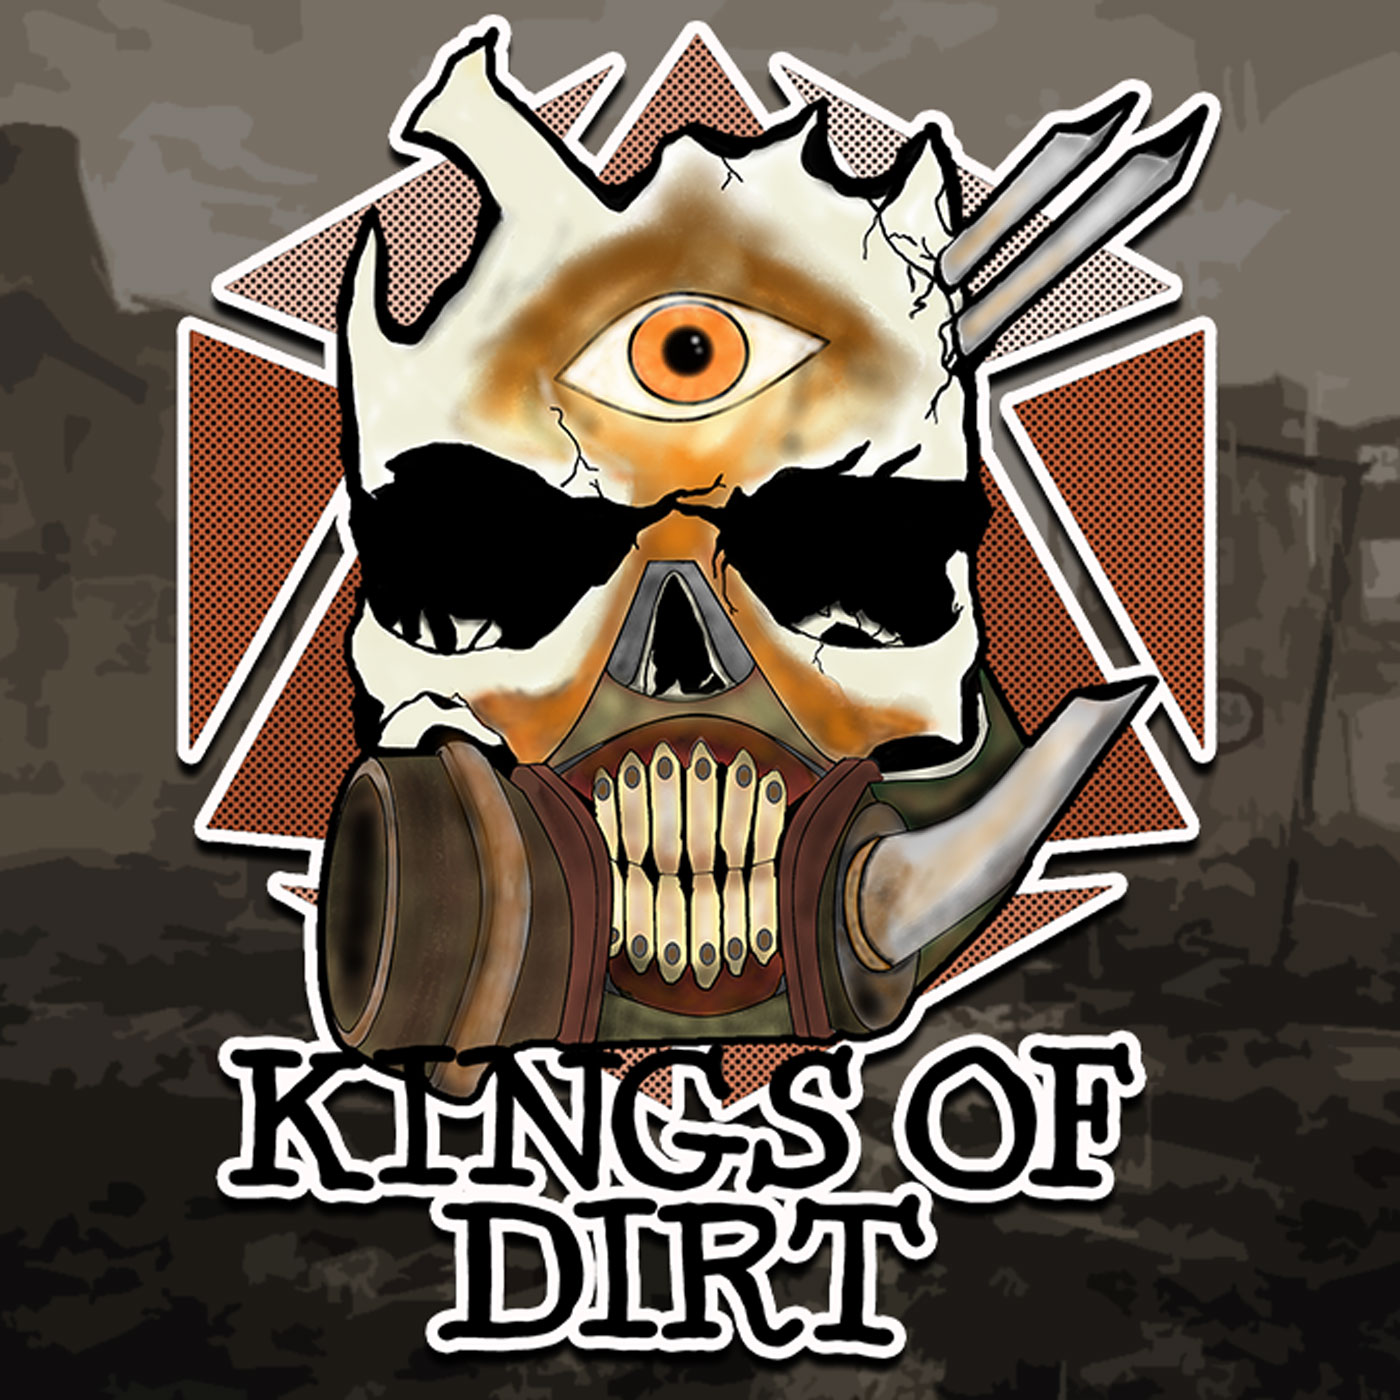 Artwork for podcast Kings of Dirt